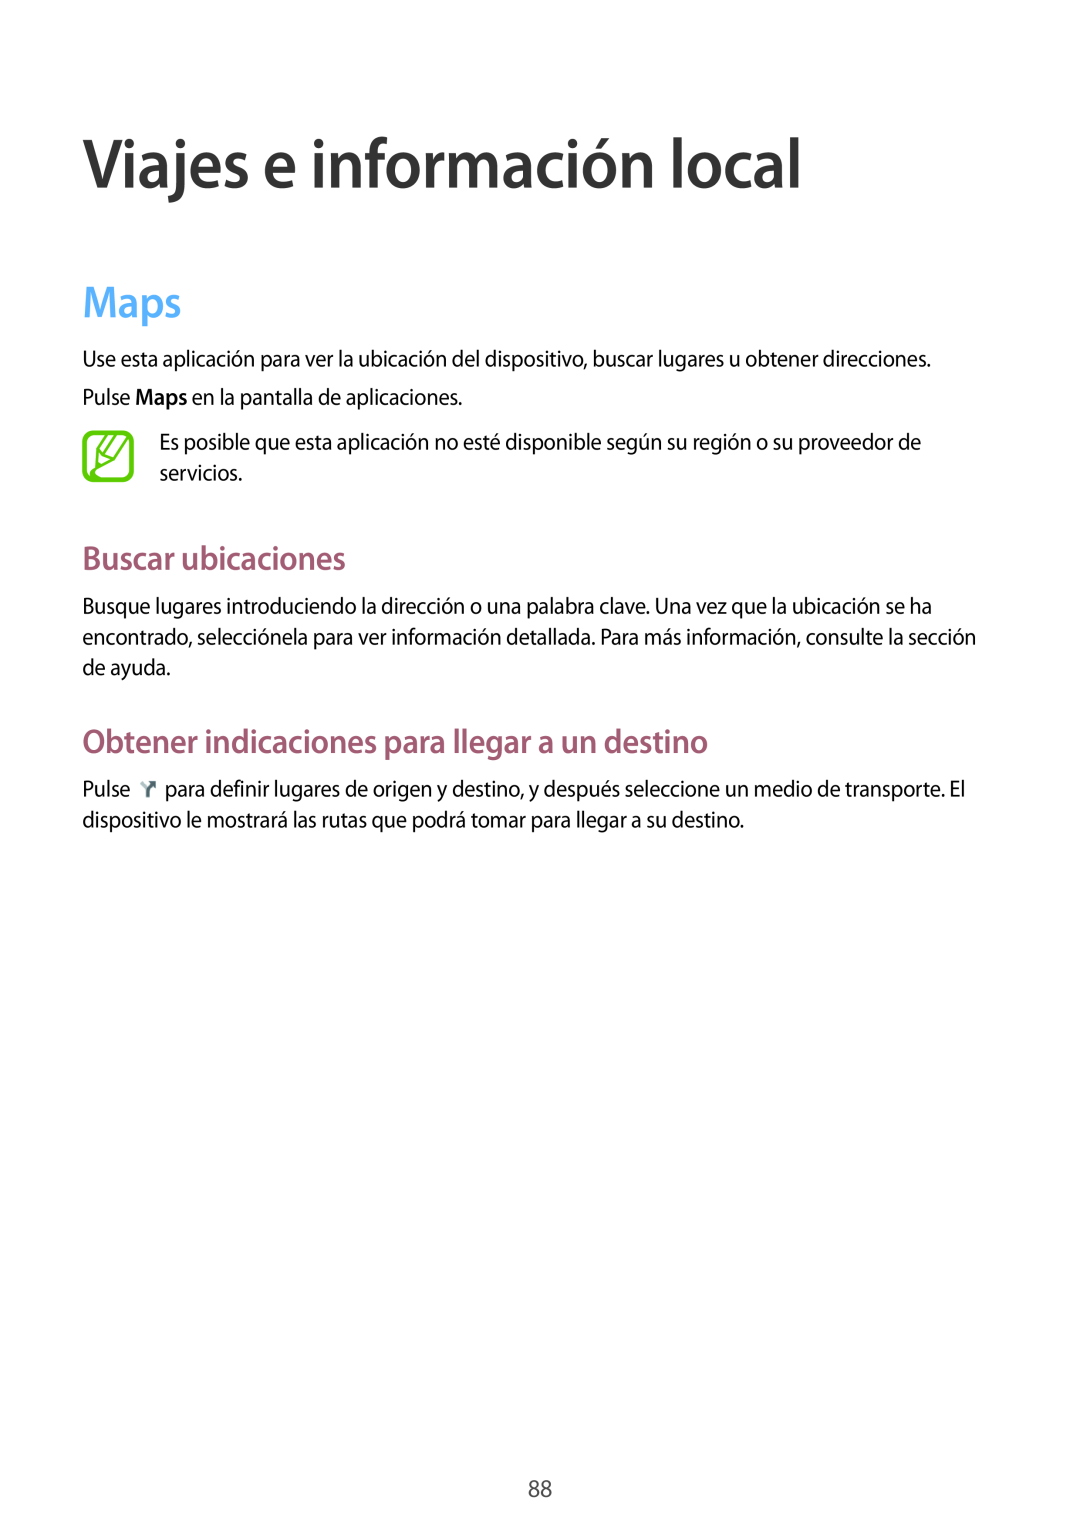 Samsung GT-P5200MKADBT Viajes e información local, Maps, Buscar ubicaciones, Obtener indicaciones para llegar a un destino 